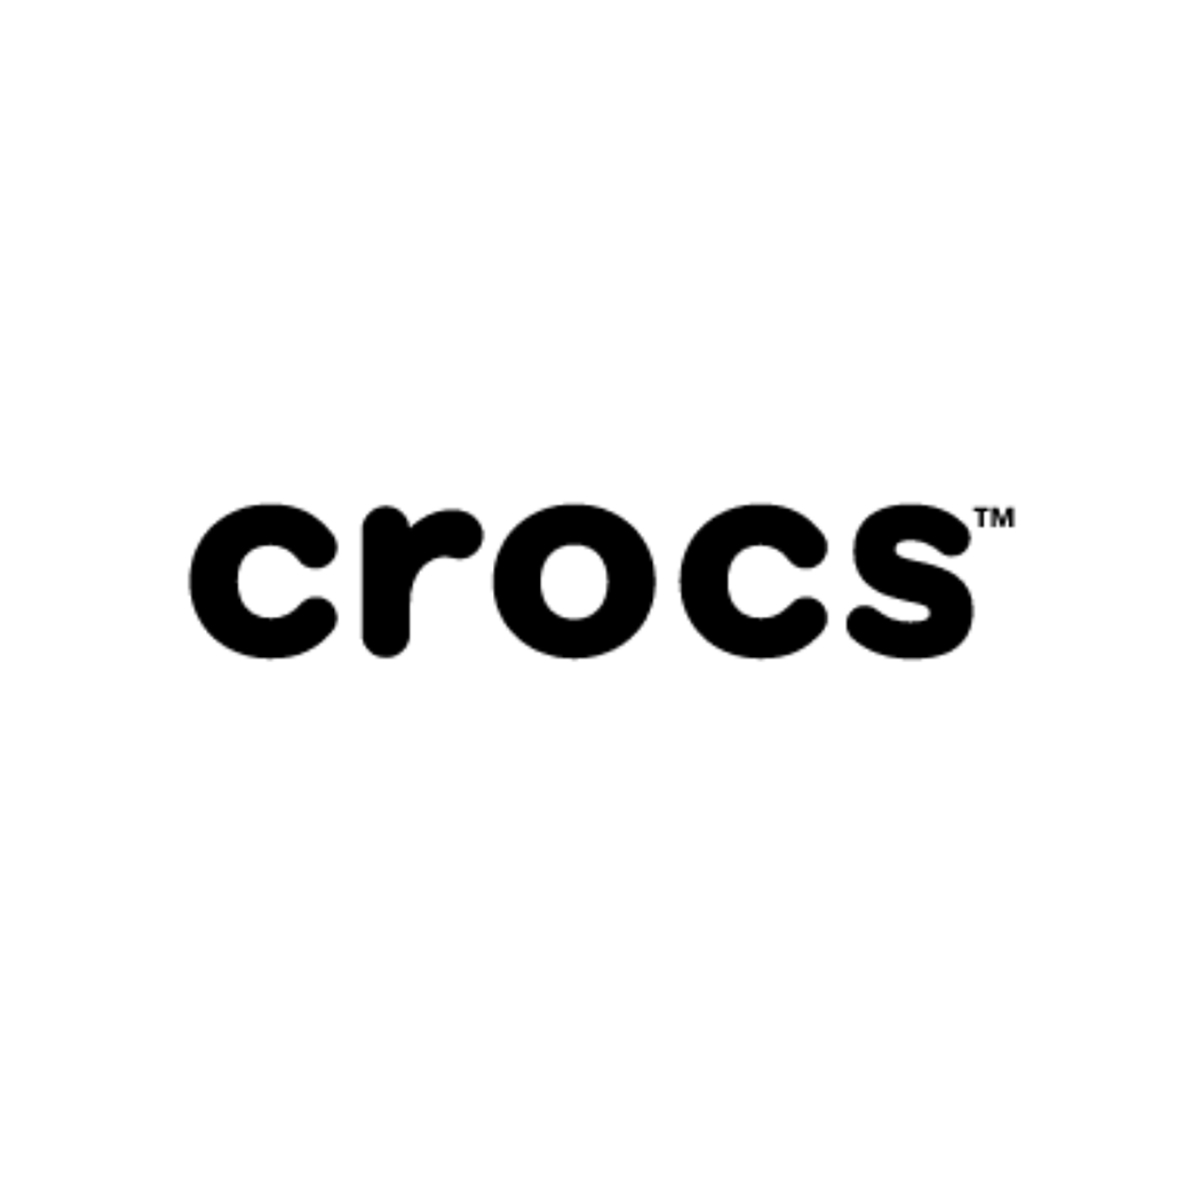 Crocs logo.